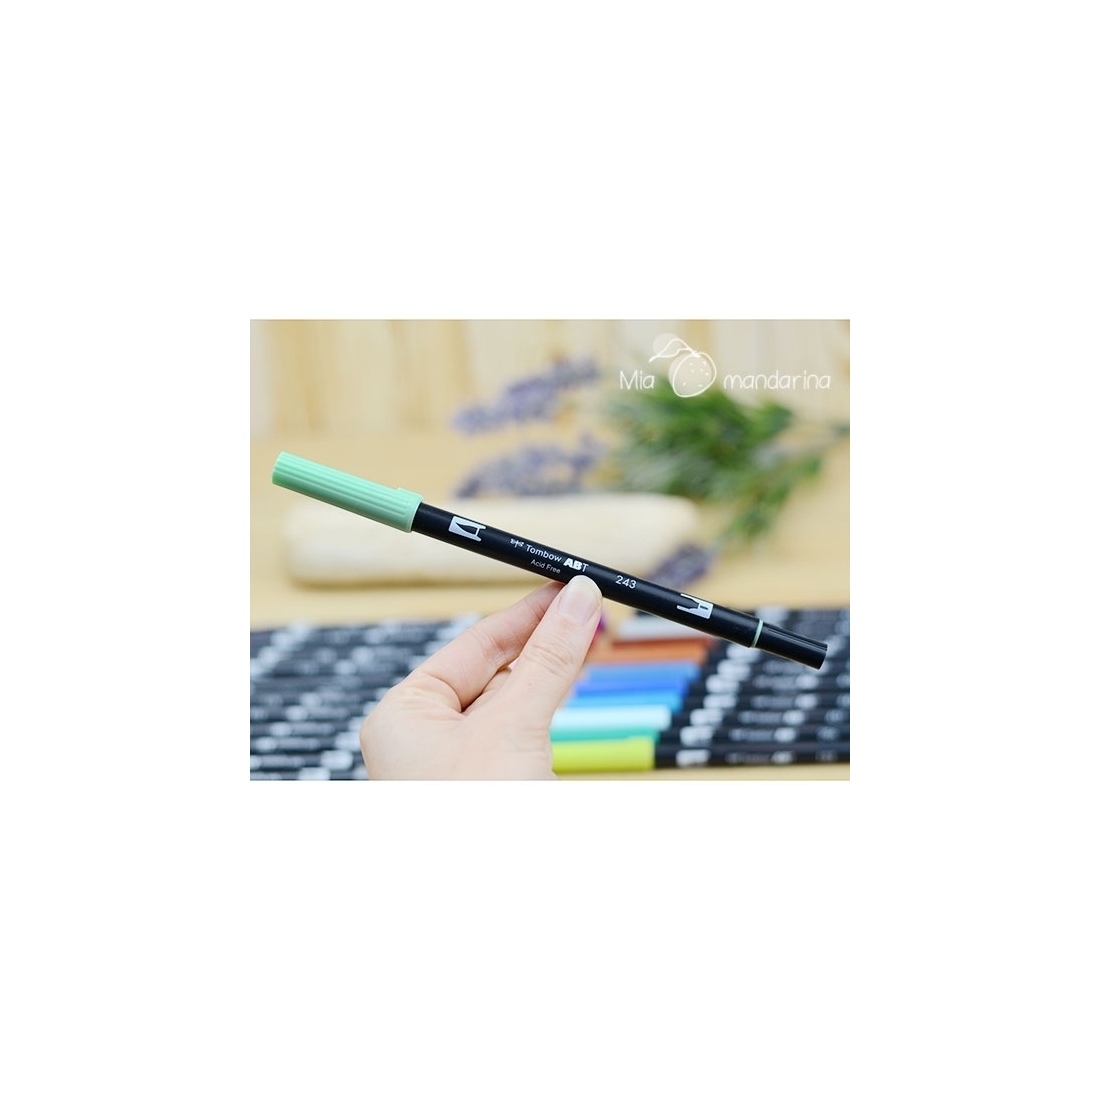 Rotuladores Tombow Dual Brush-Pen ABT